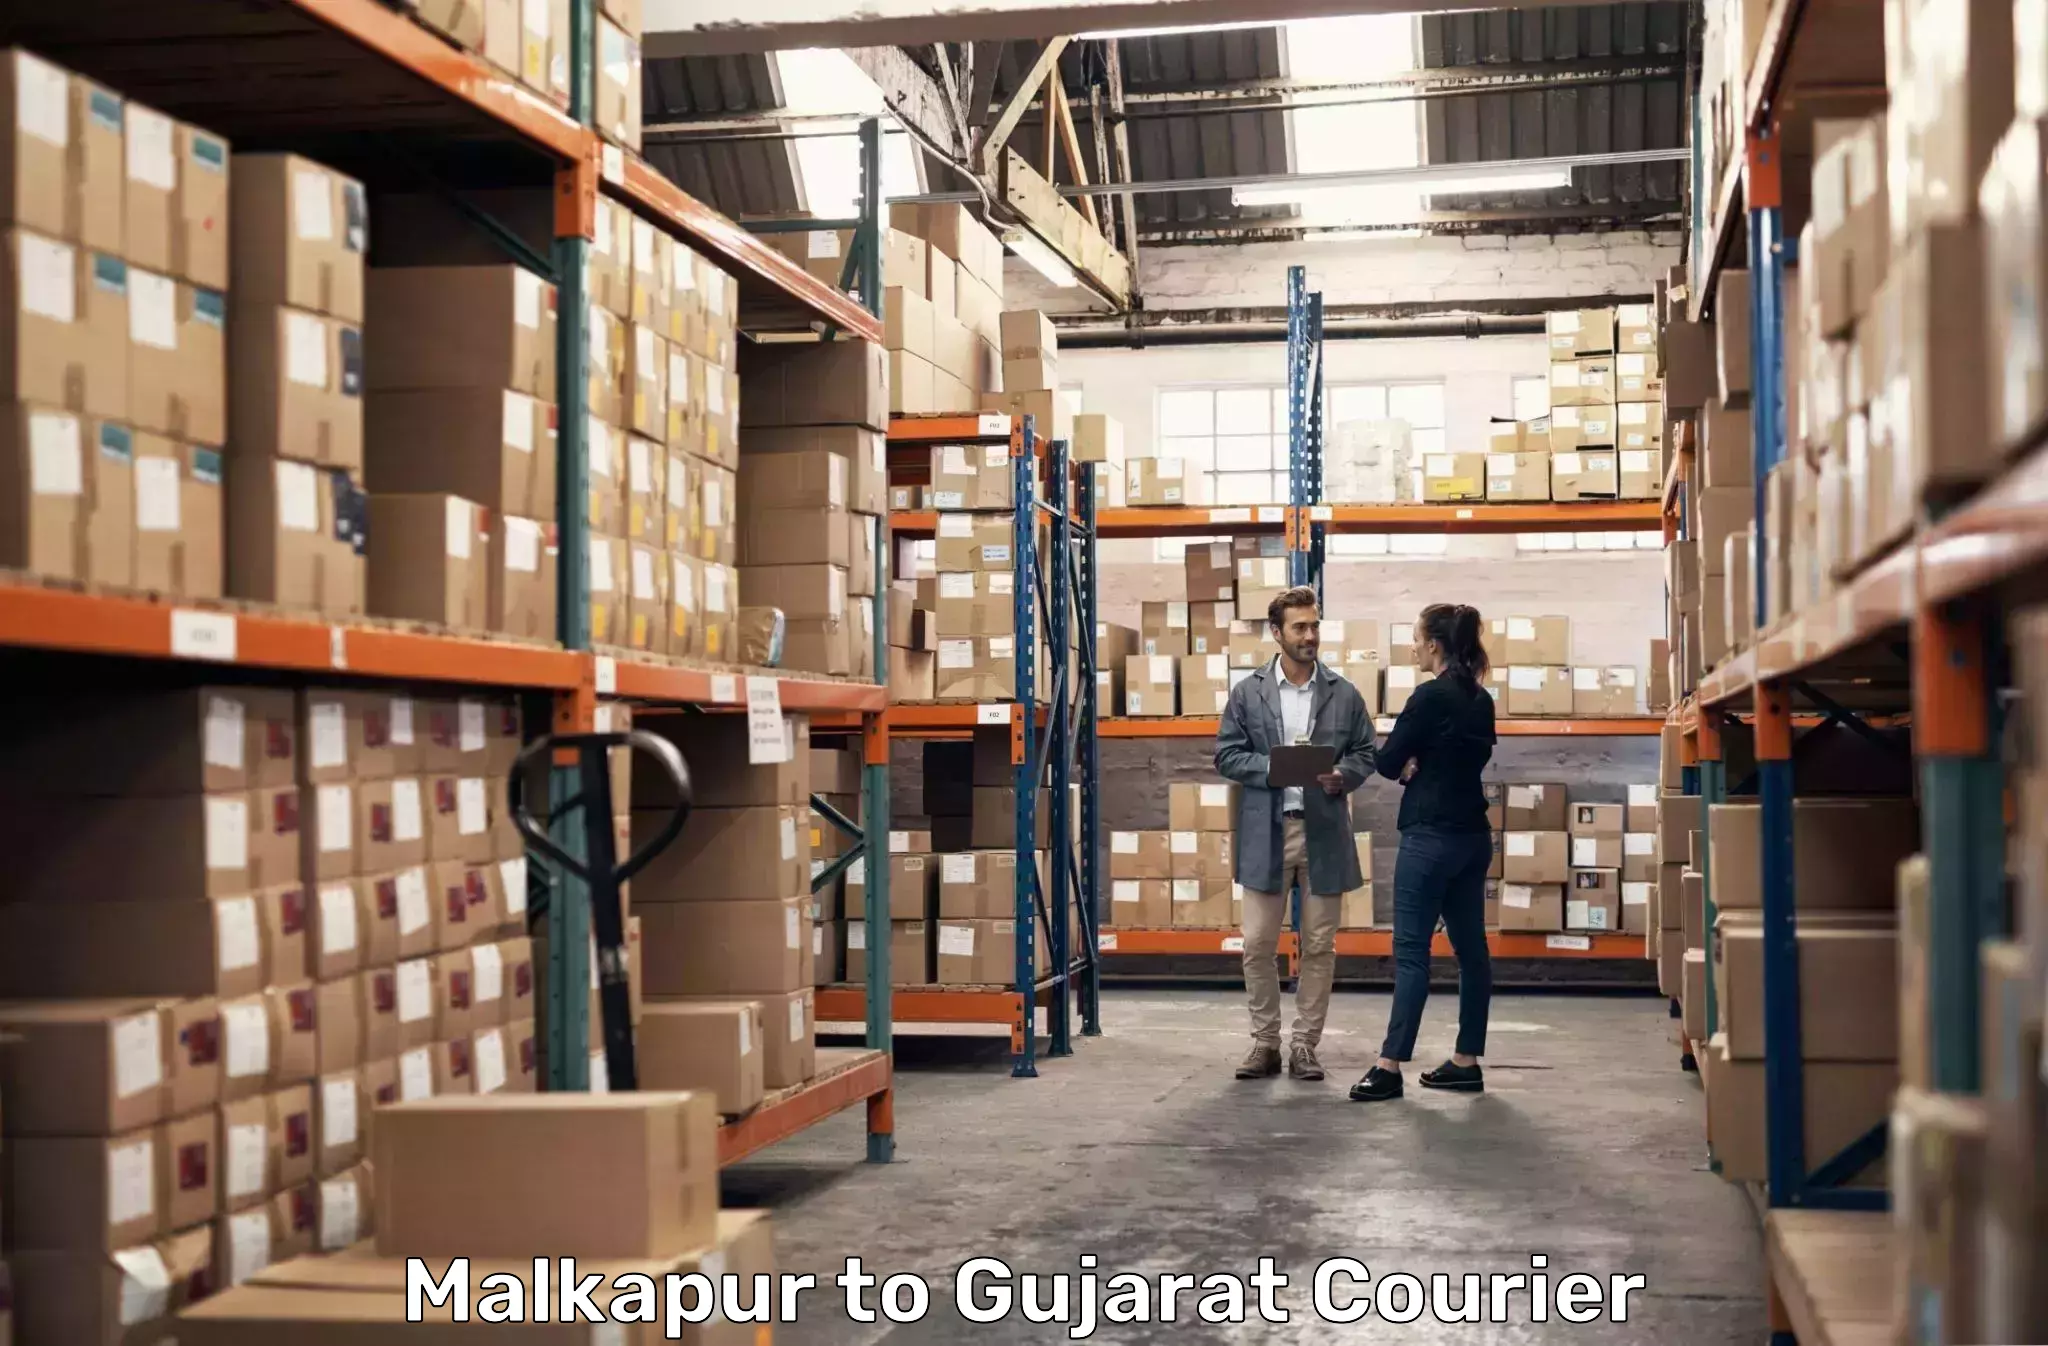 Courier service comparison Malkapur to Dahej